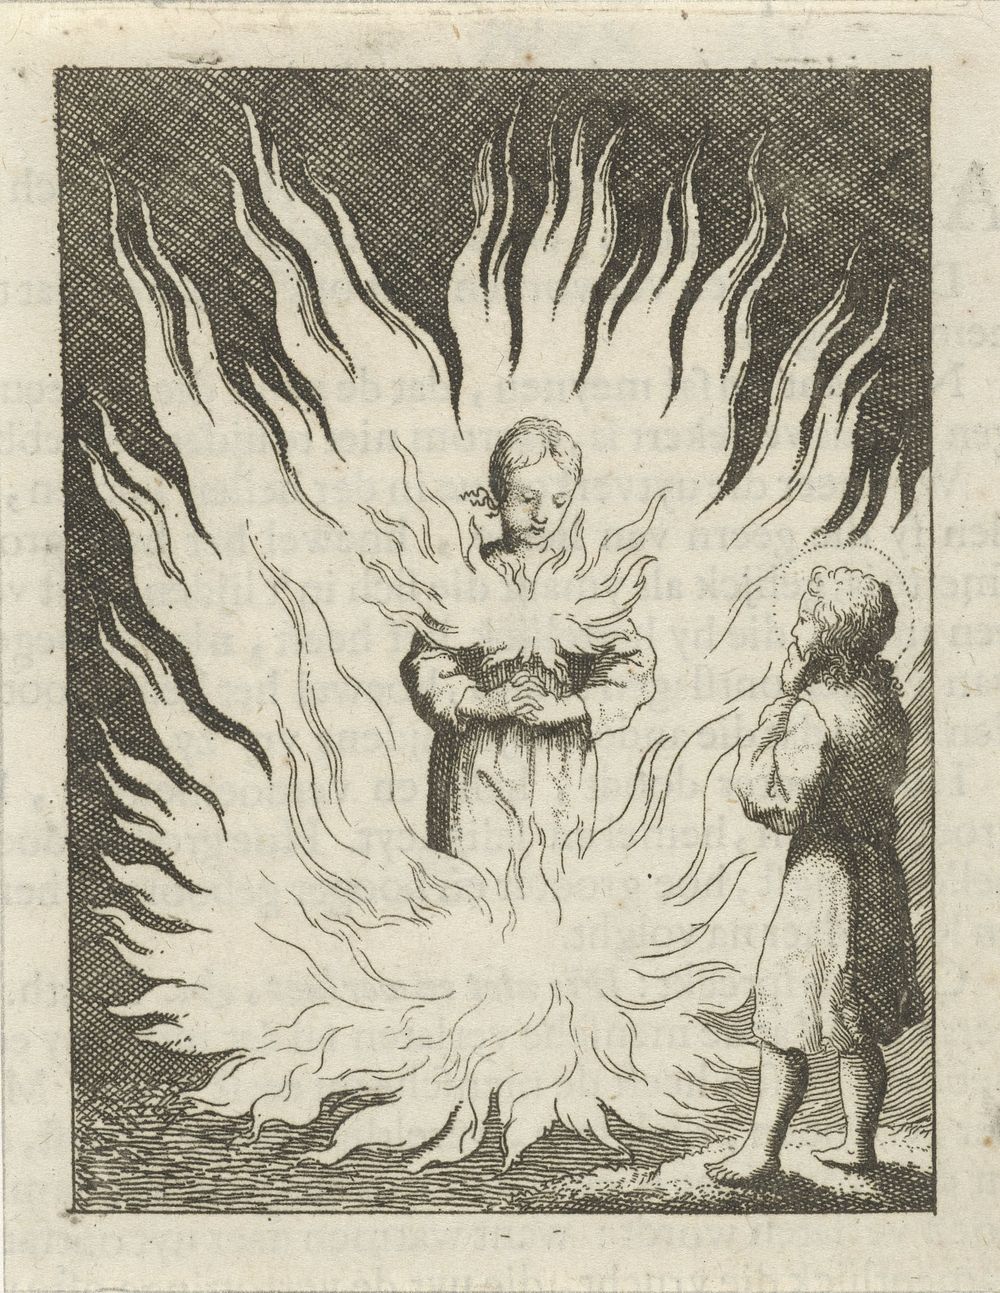 Christus aanschouwt de gepersonifieerde ziel die door vlammen wordt omringd (1678 - 1687) by Jan Luyken and Pieter Arentsz II